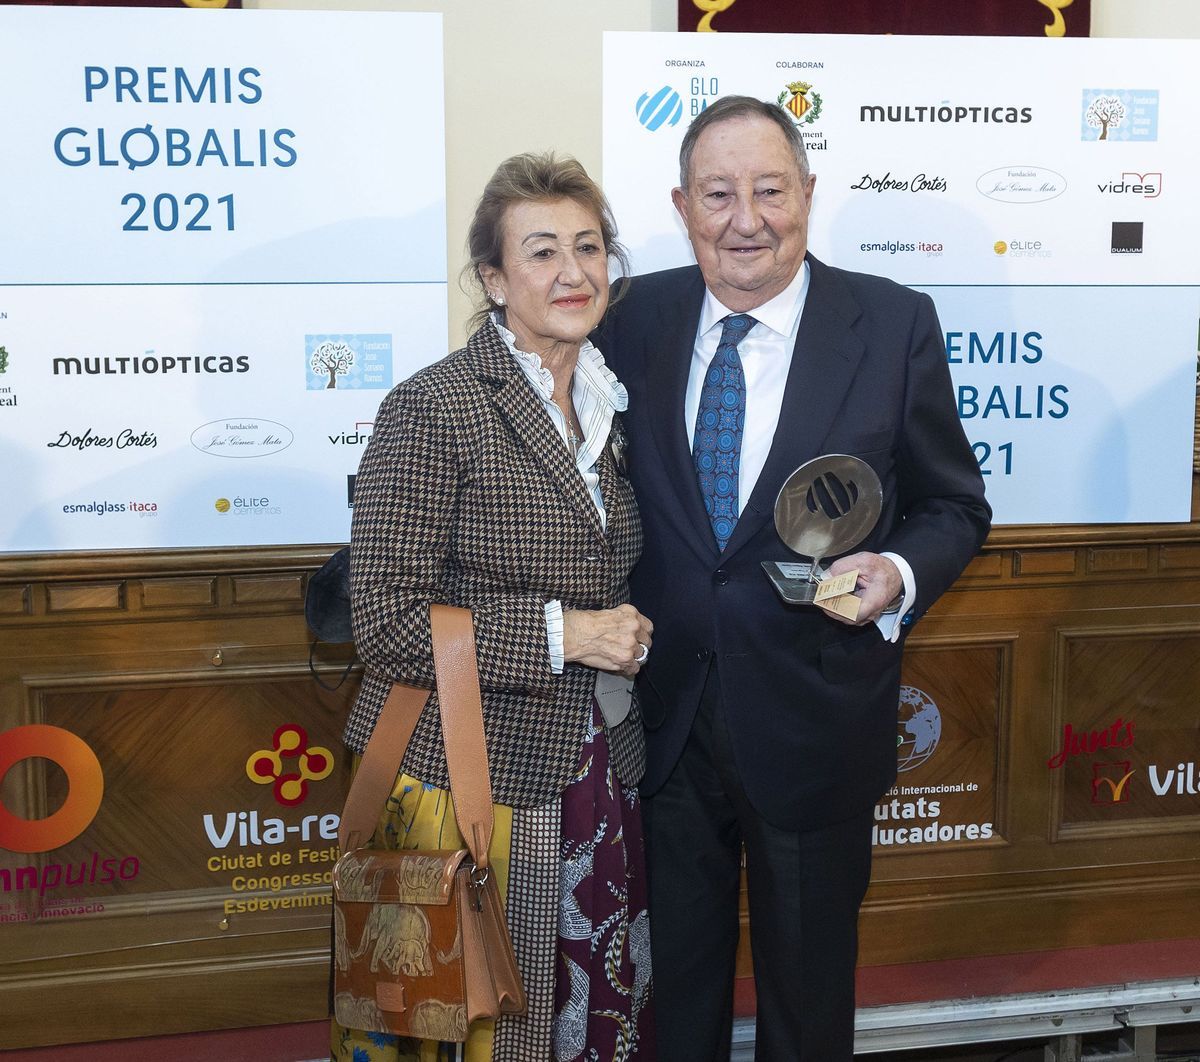 Pablo Baigorri posa con el premio a la trayectorias empresarial de la Fundación Globalis junto a su esposa Chelo.